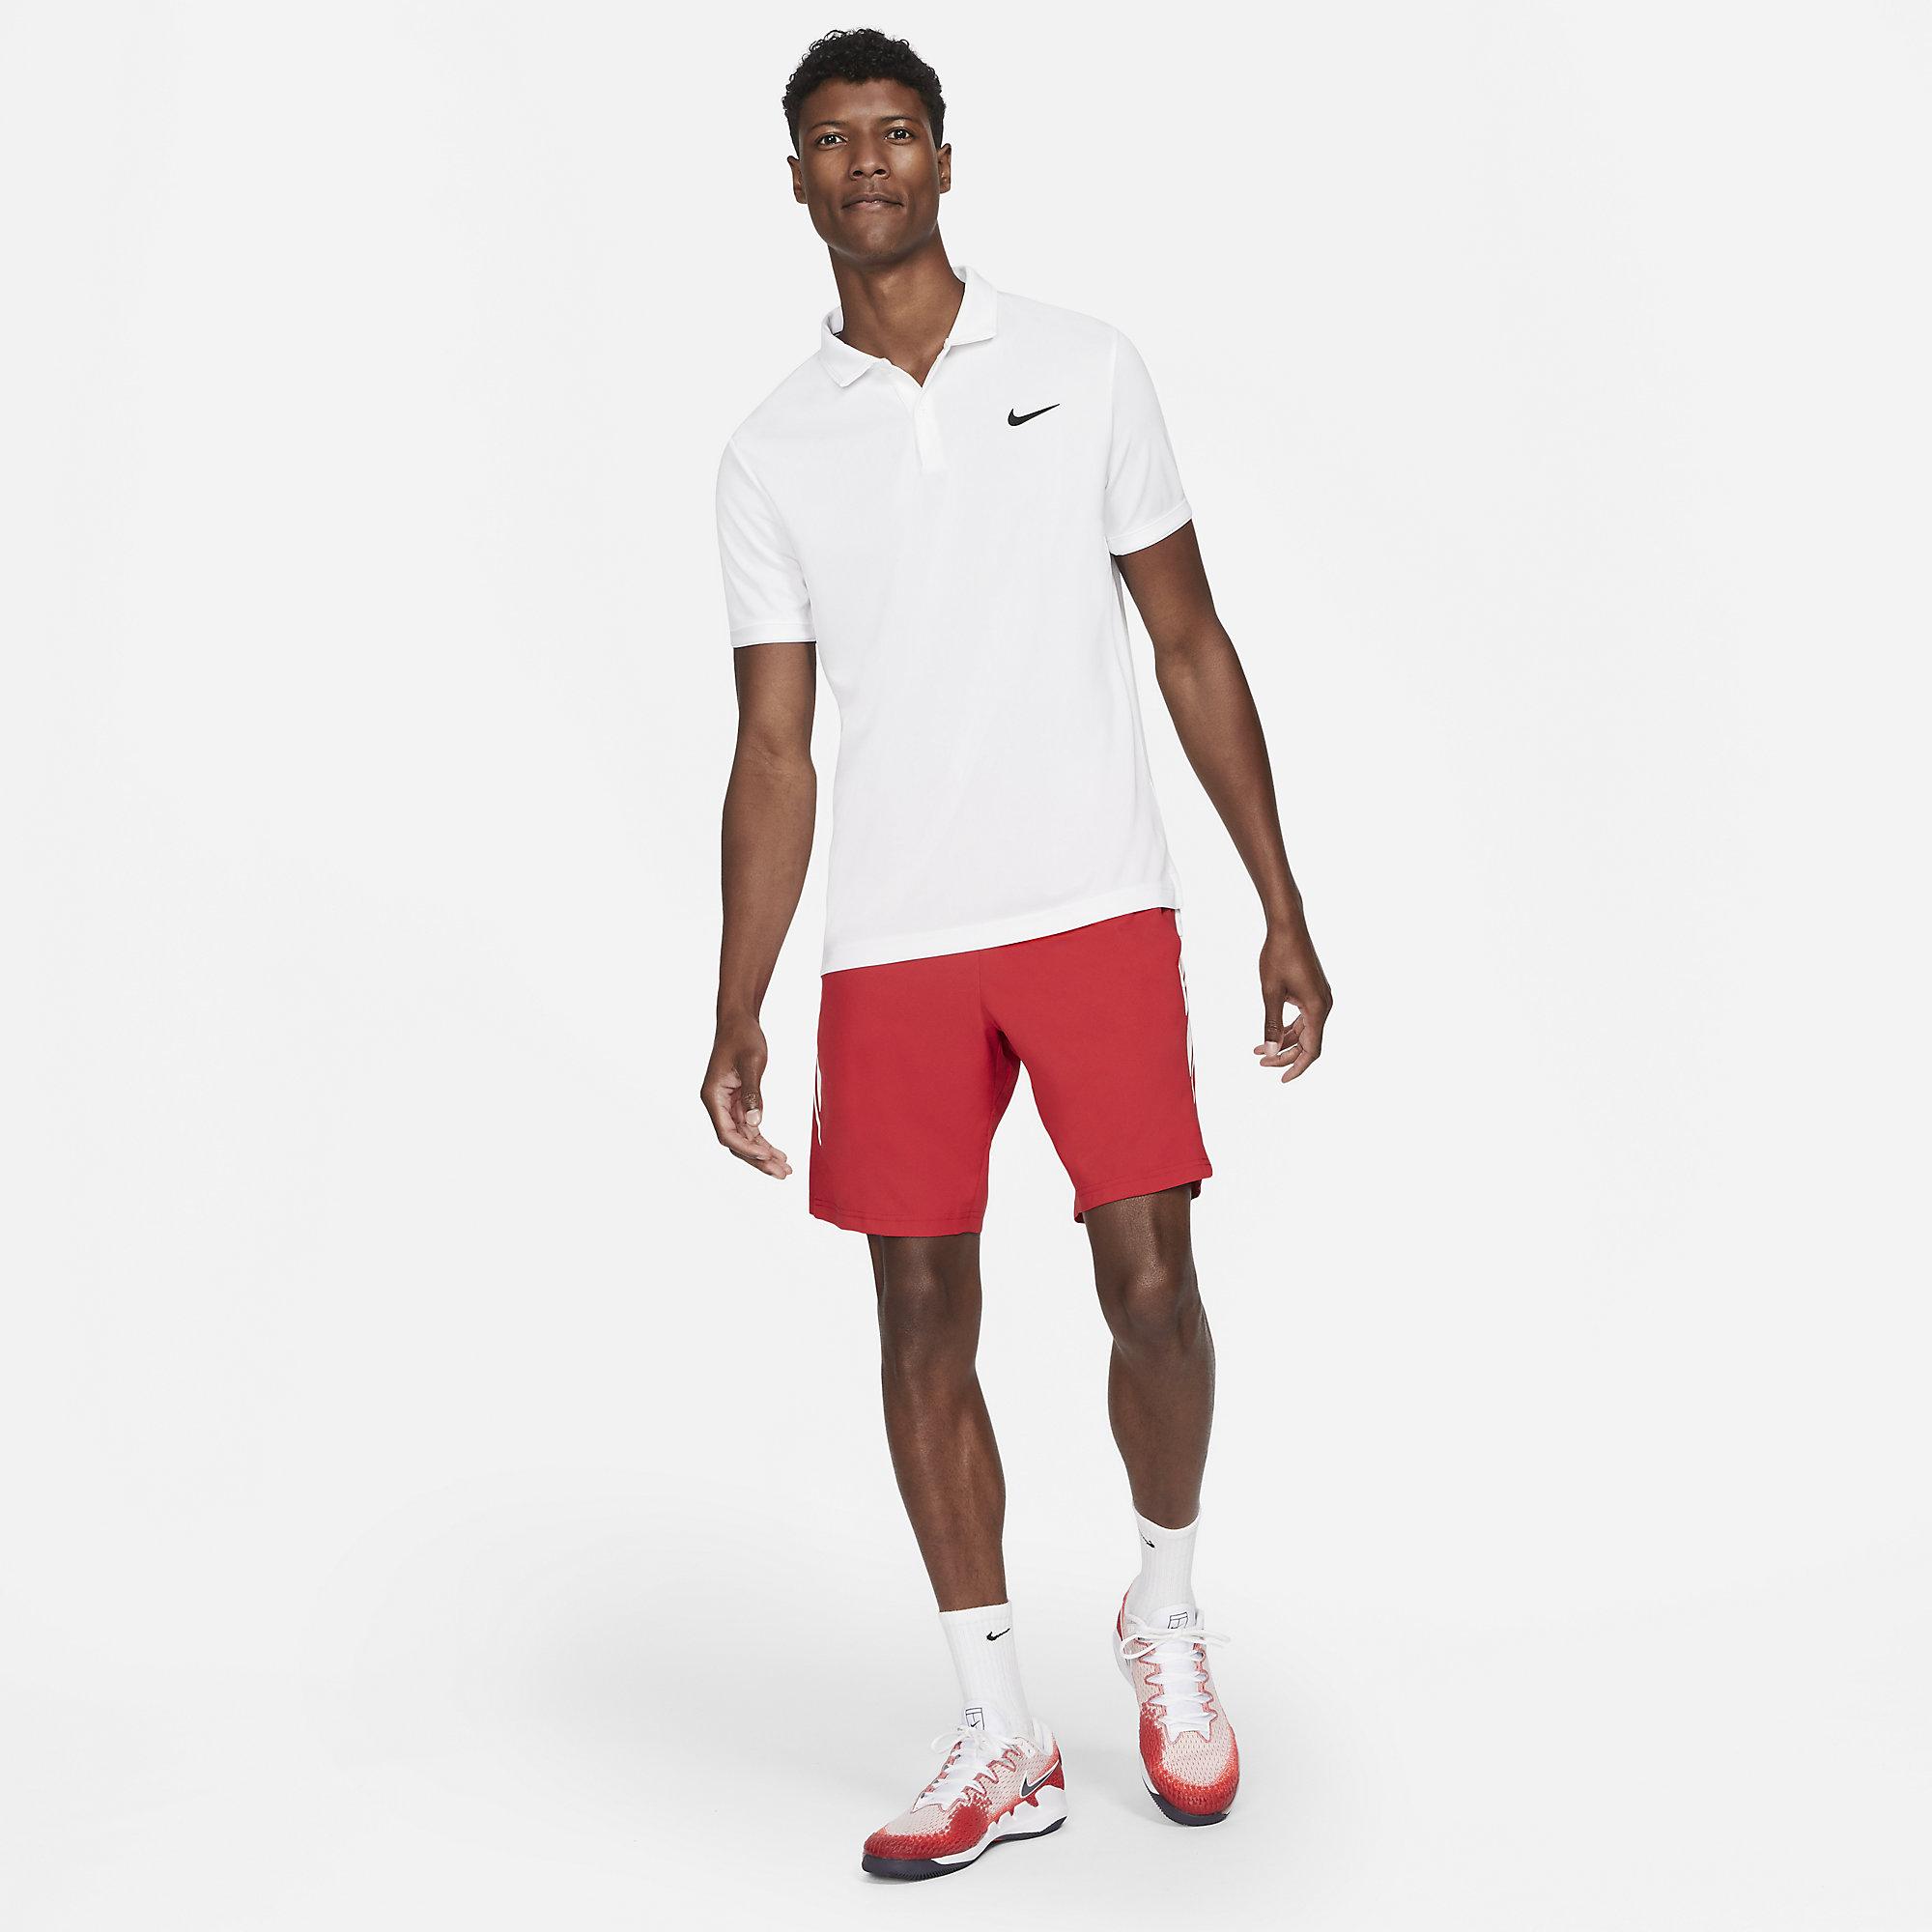 Nike Mens Victory Tennis Polo - White - Tennisnuts.com